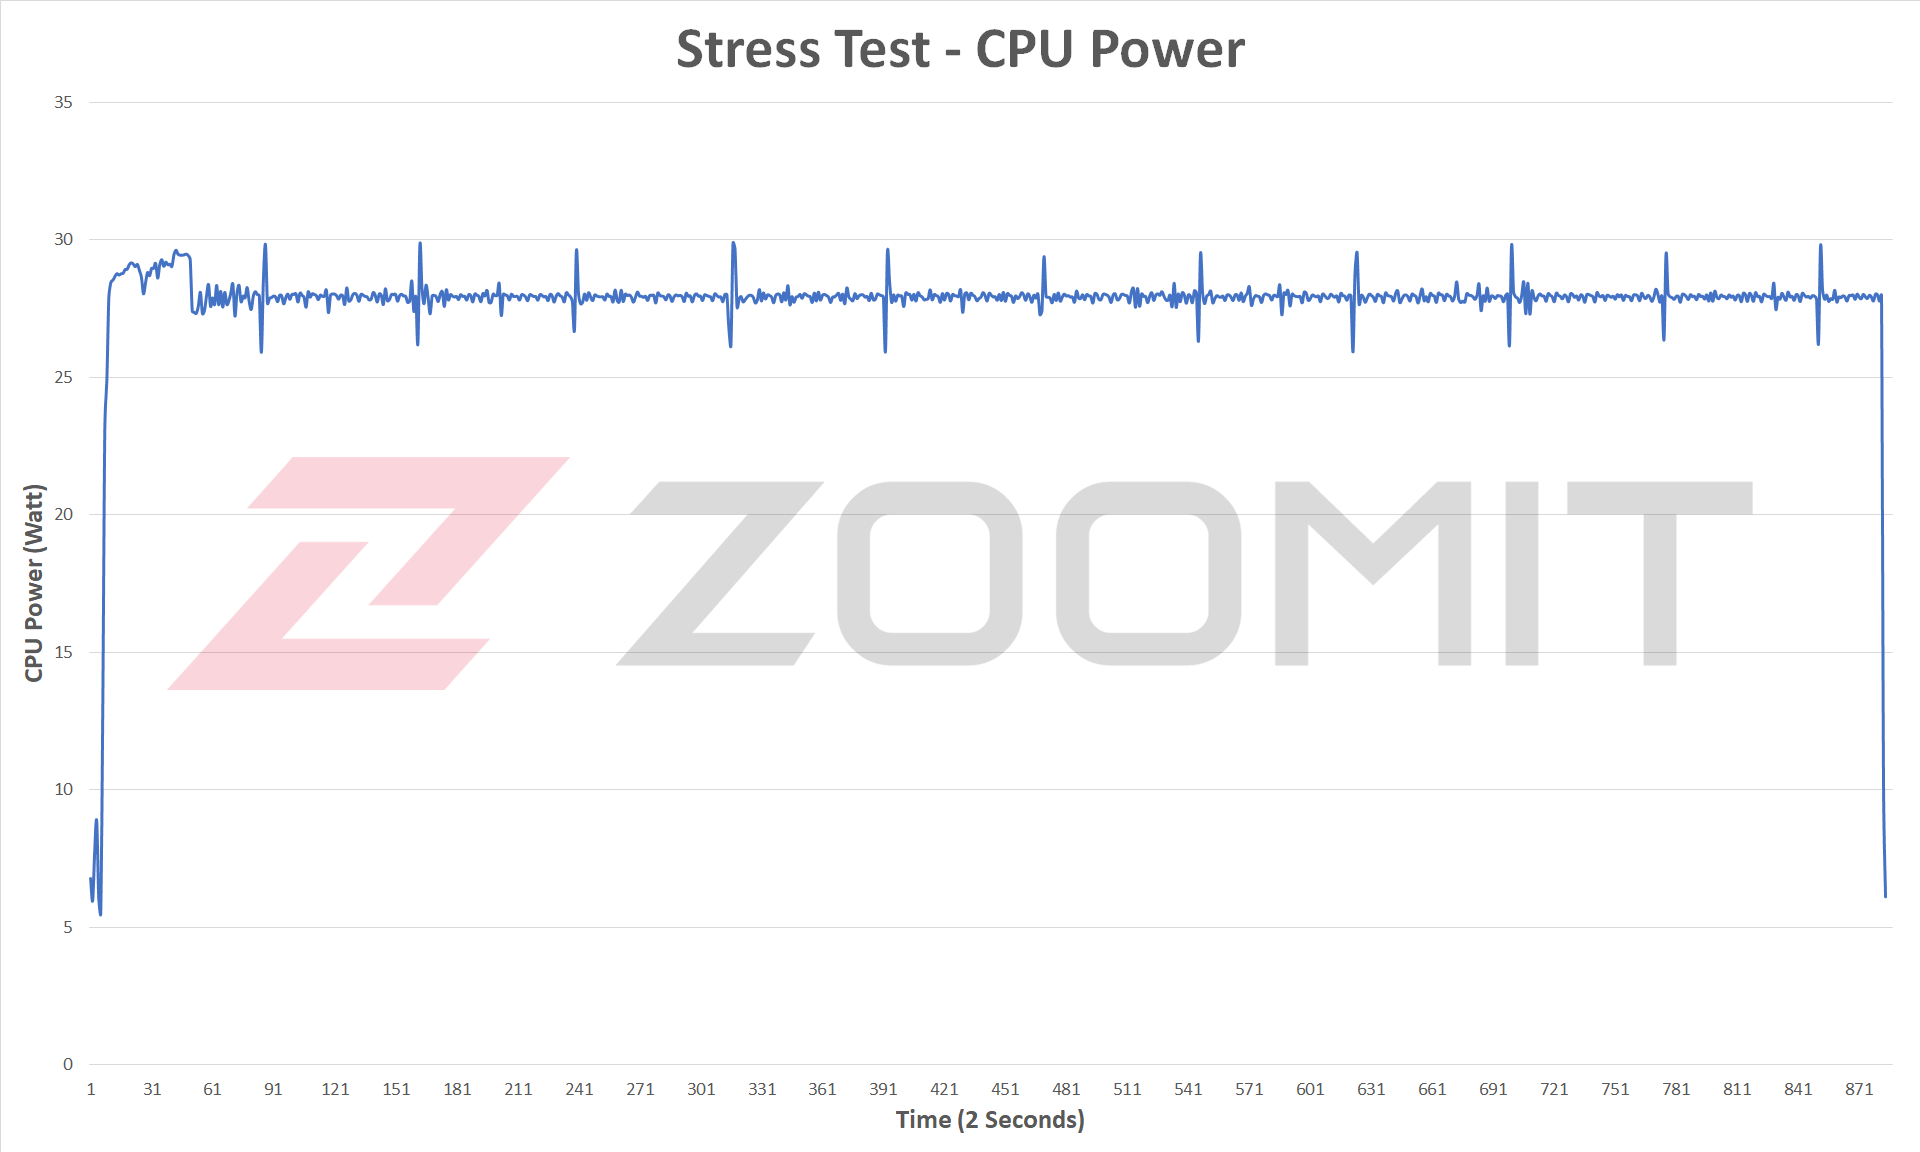 CPU power in multi-core processing